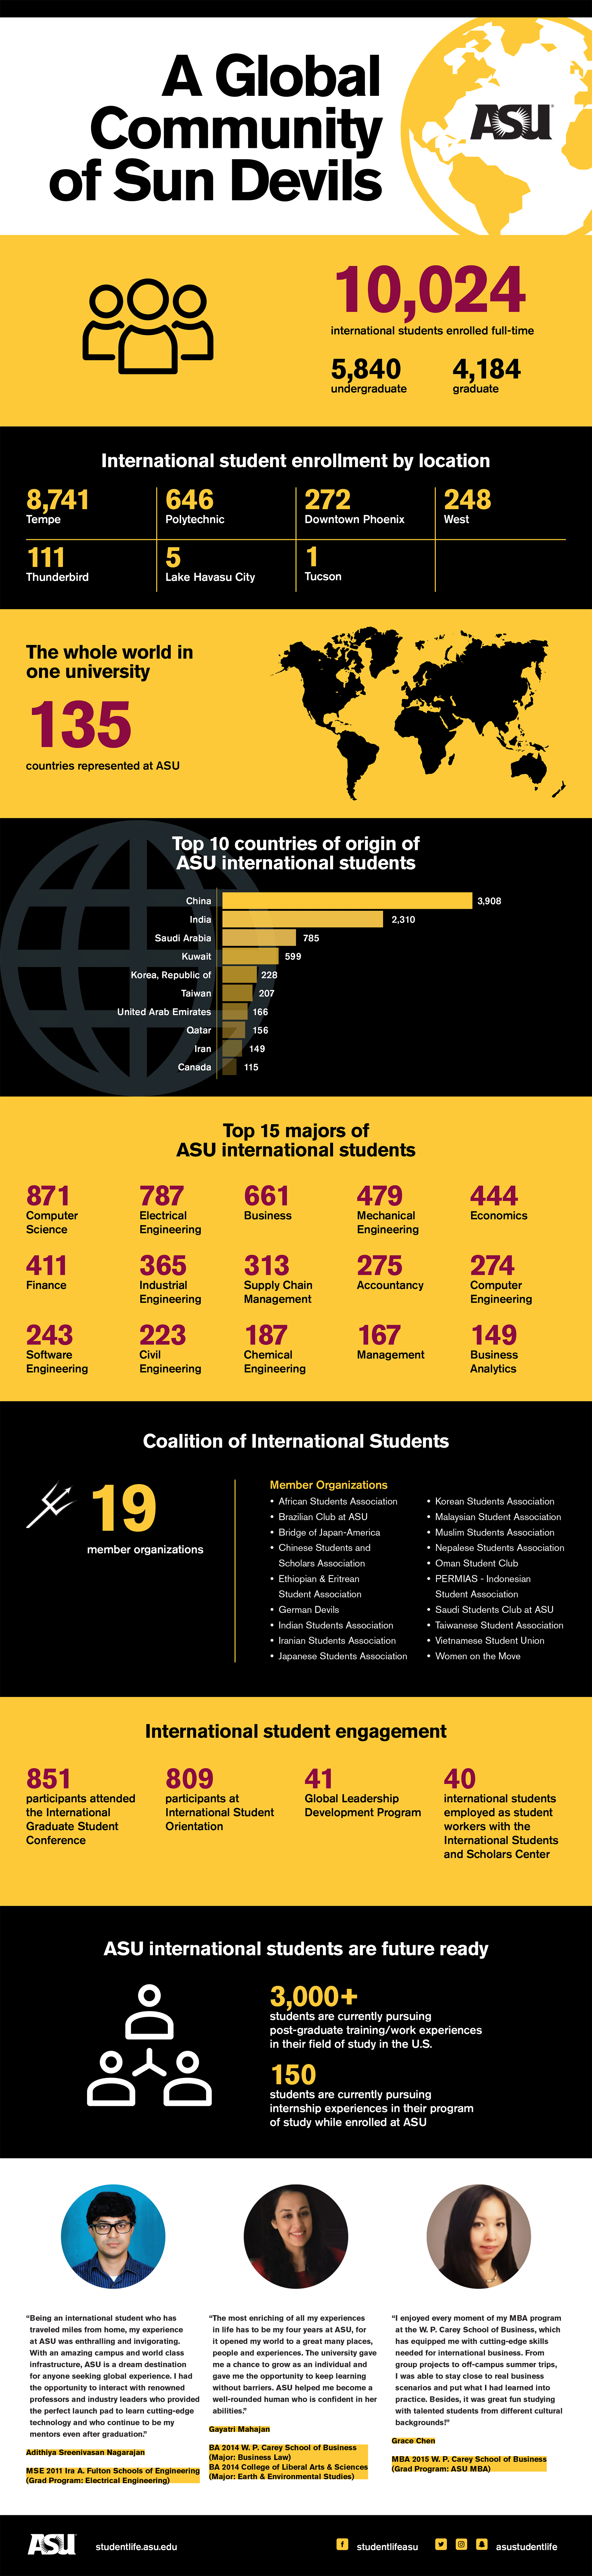 Stats on international students at ASU